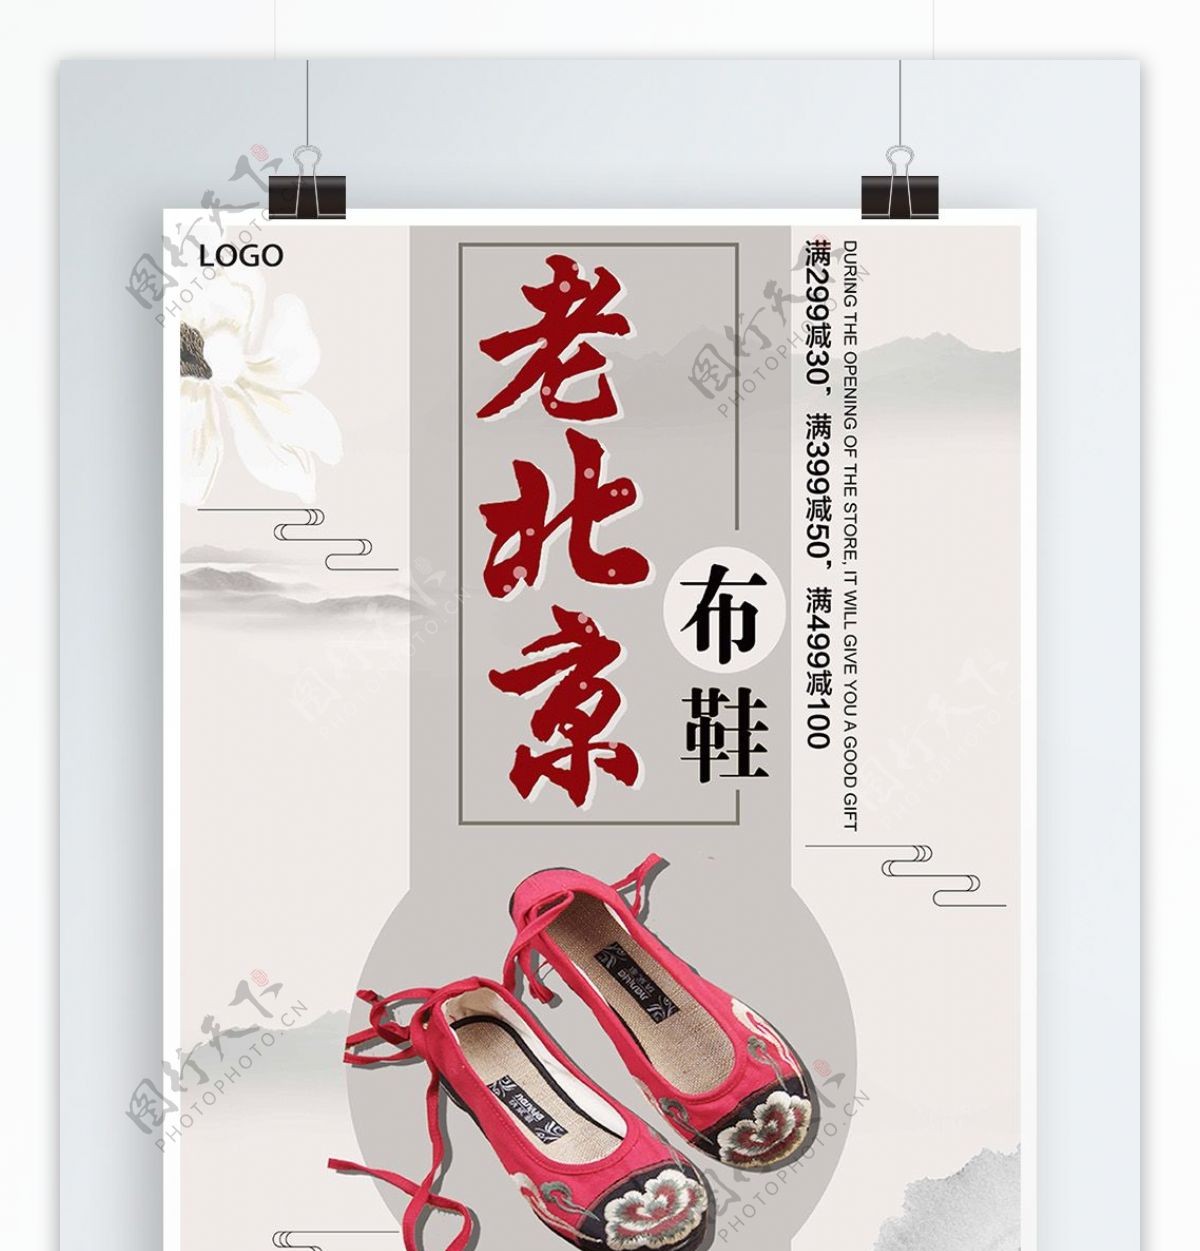 白色背景简约中国风老北京布鞋宣传海报